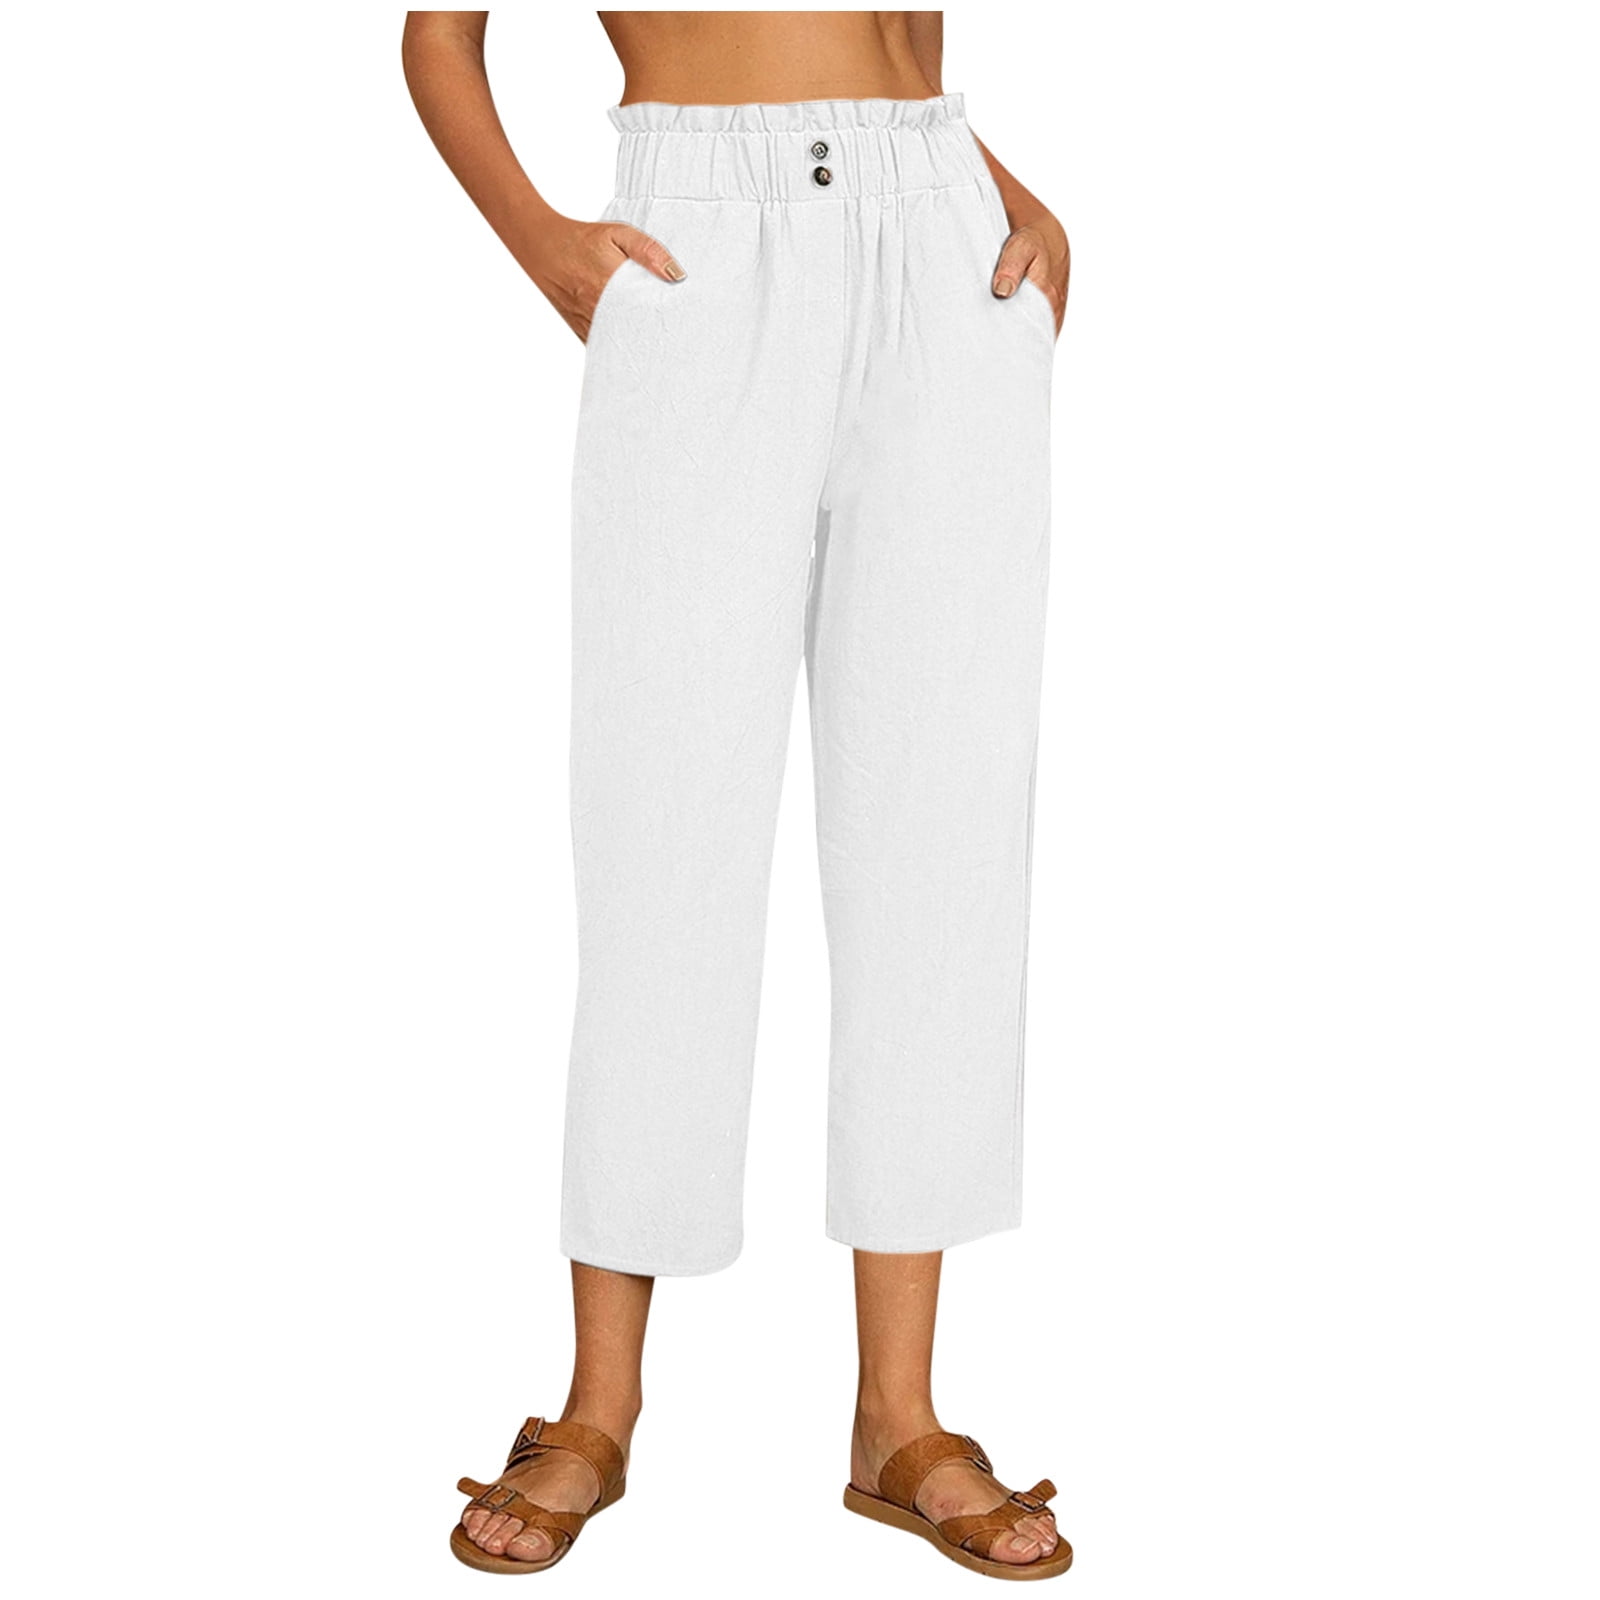 pgeraug leggings for women white linen for tightness trousers